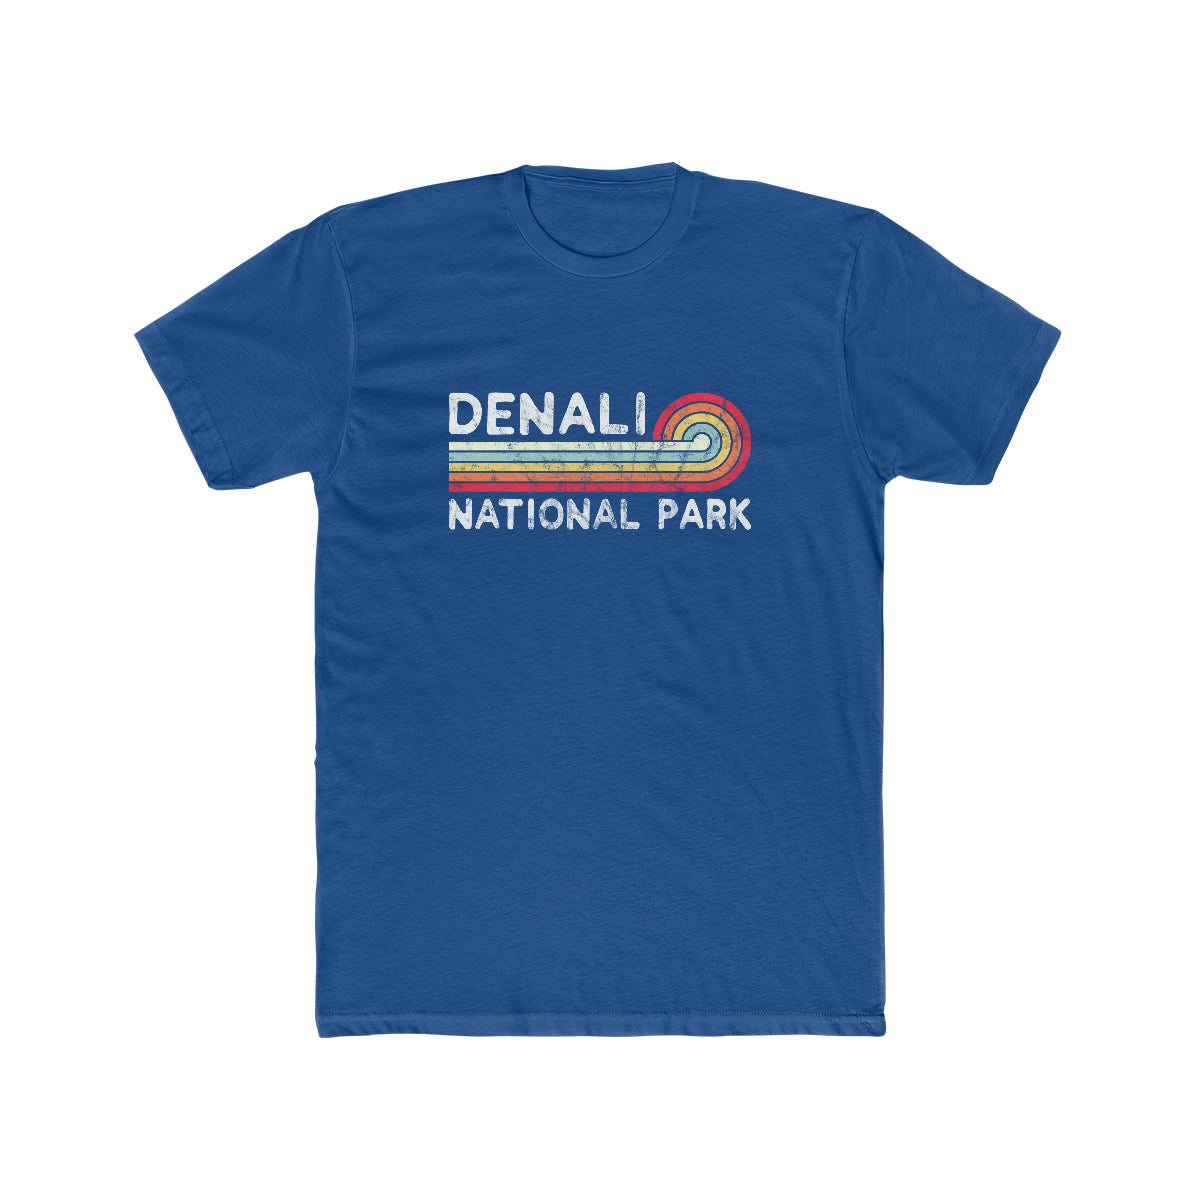 Denali National Park T-Shirt - Vintage Stretched Sunrise